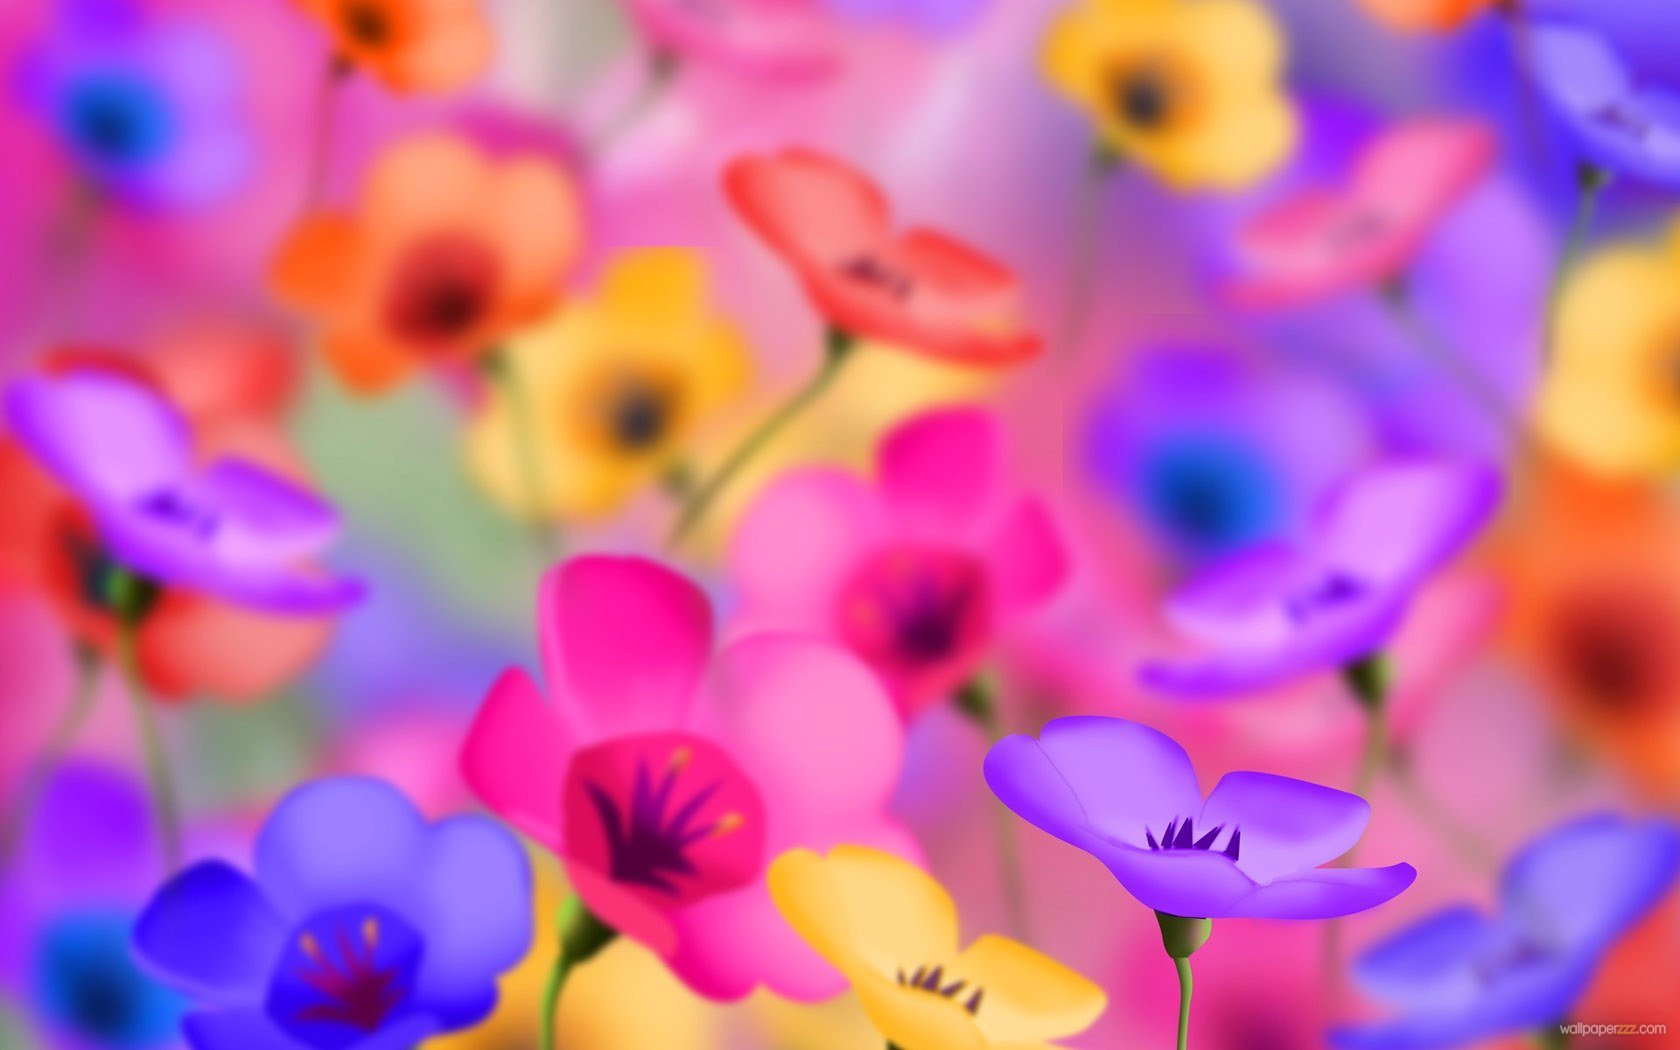 50+] Free 3D Colorful Flowers Wallpaper - WallpaperSafari